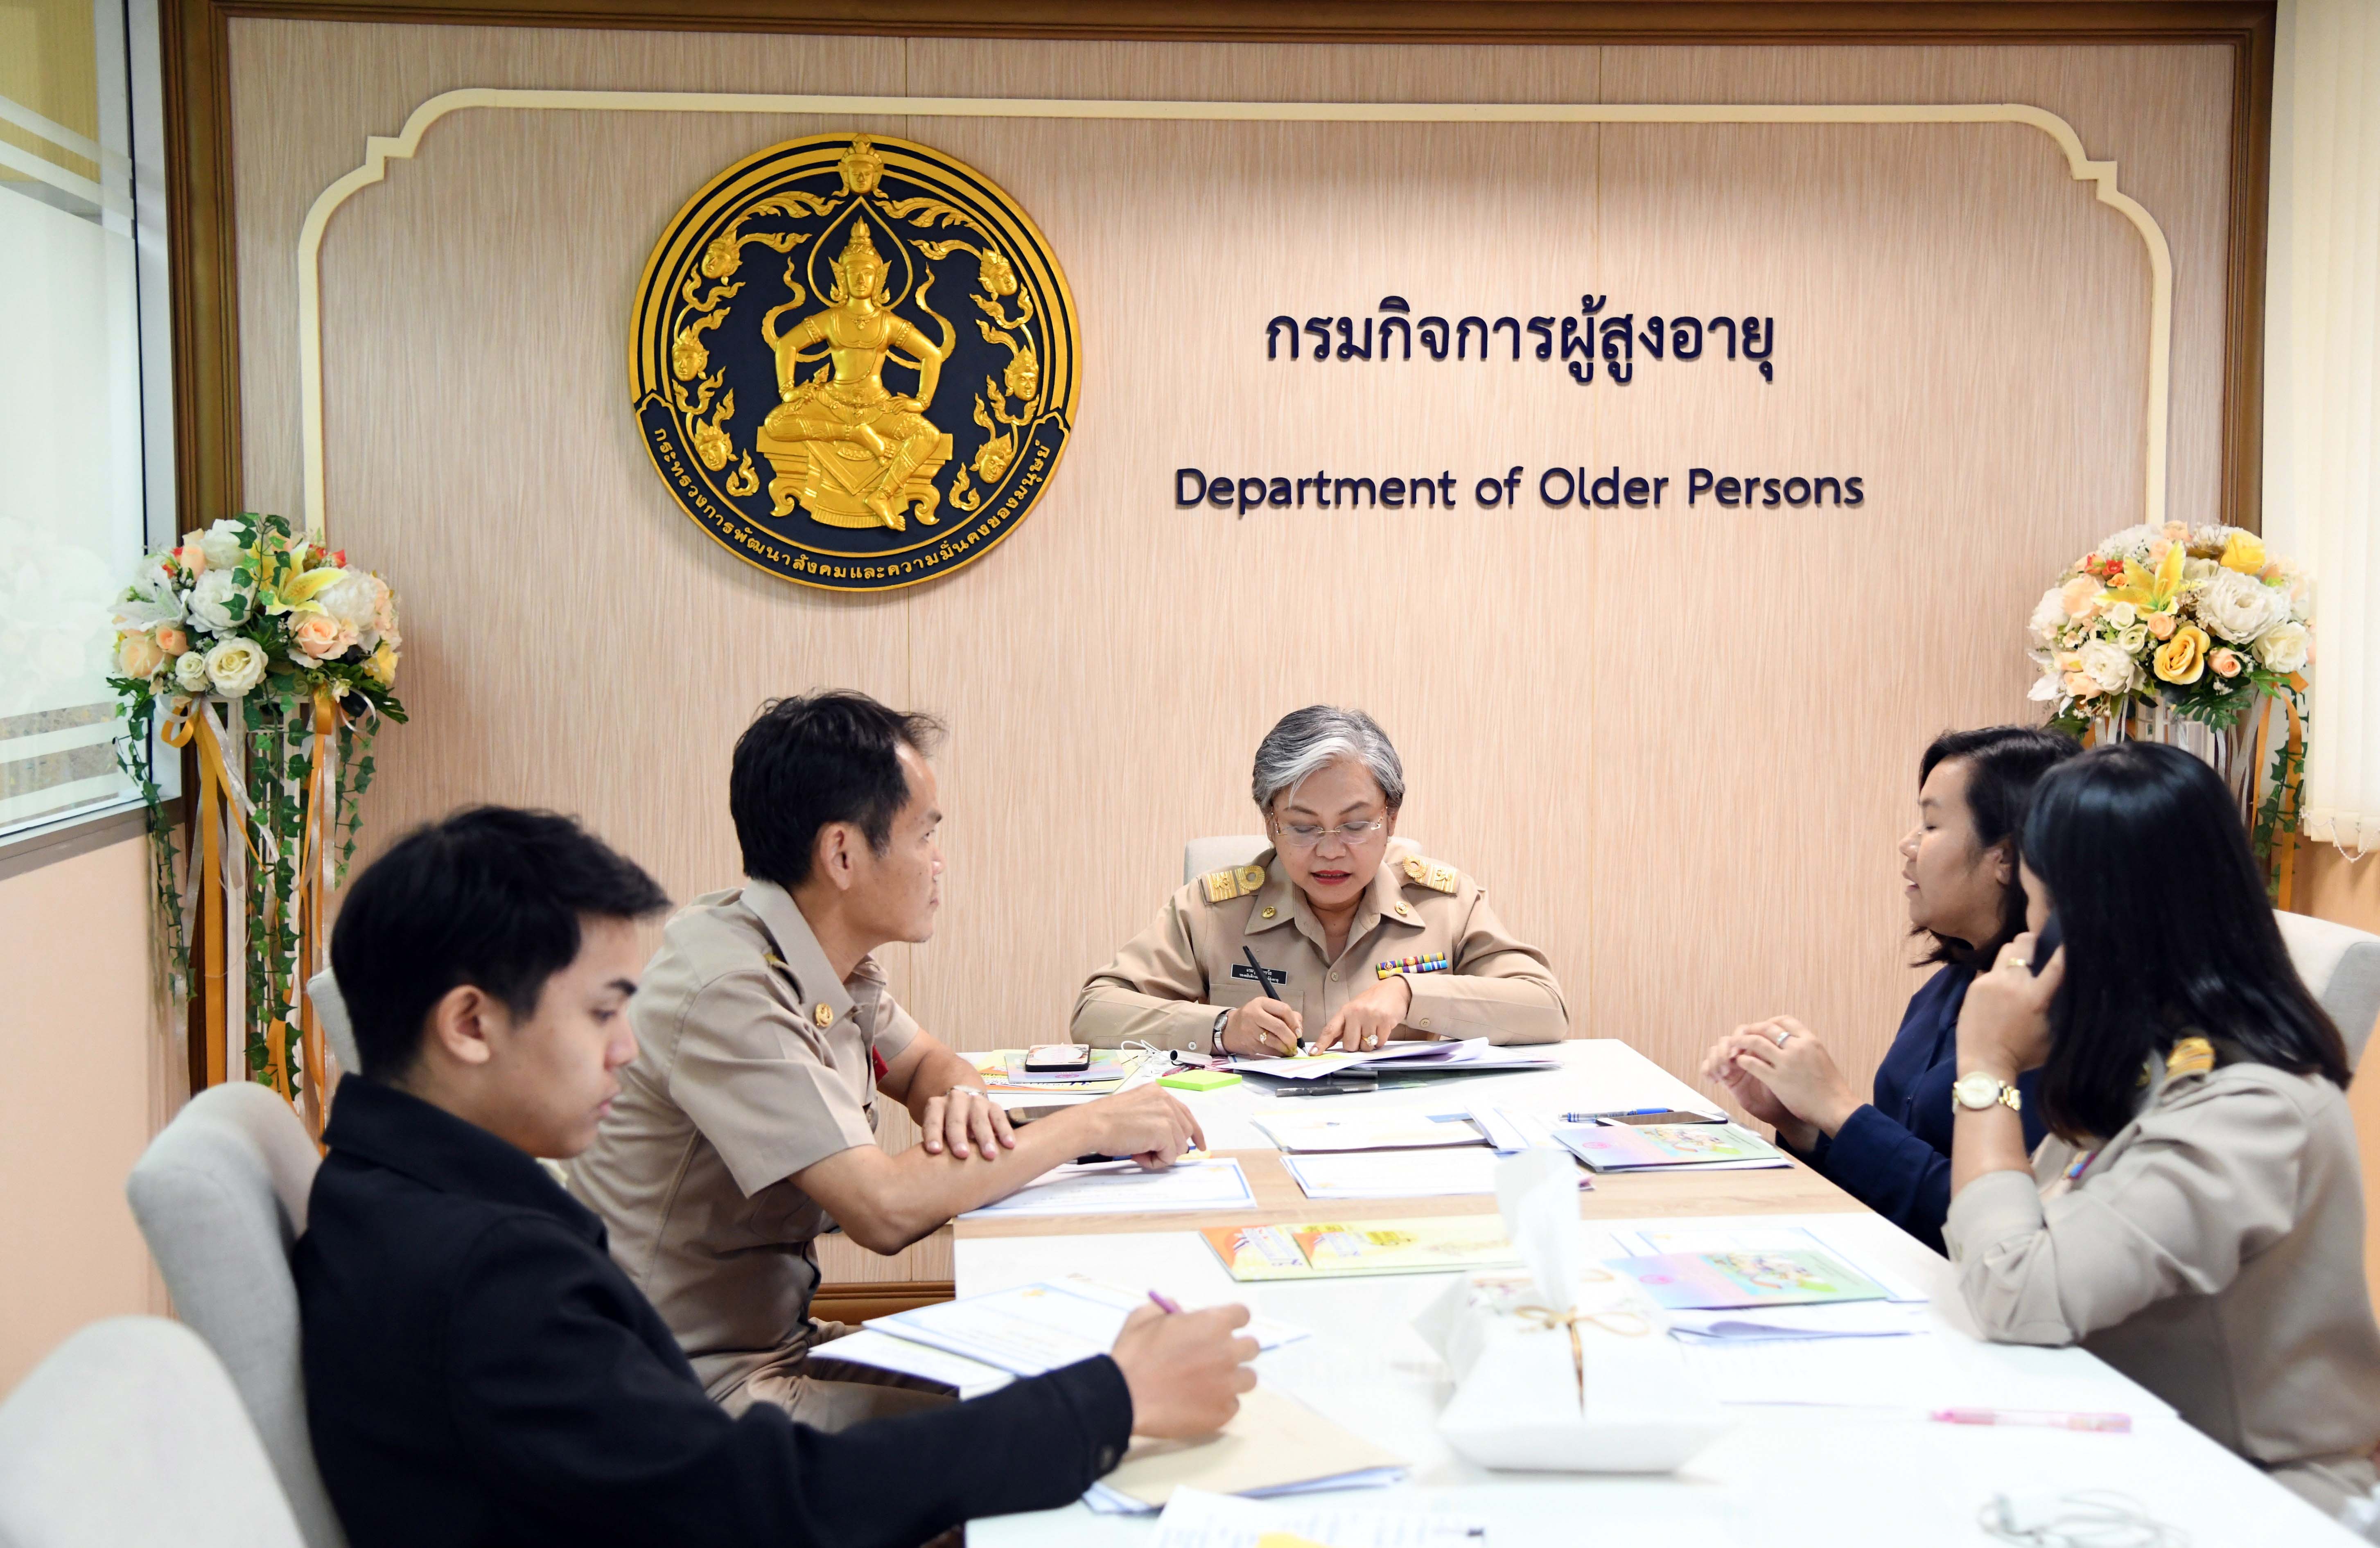 การประชุมหารือการเสนอแนวทางการดำเนินงานตามระเบียบวาระแห่งชาติ เรื่อง สังคมสูงอายุและการขับเคลื่อนงานผู้สูงอายุในประเทศไทย 